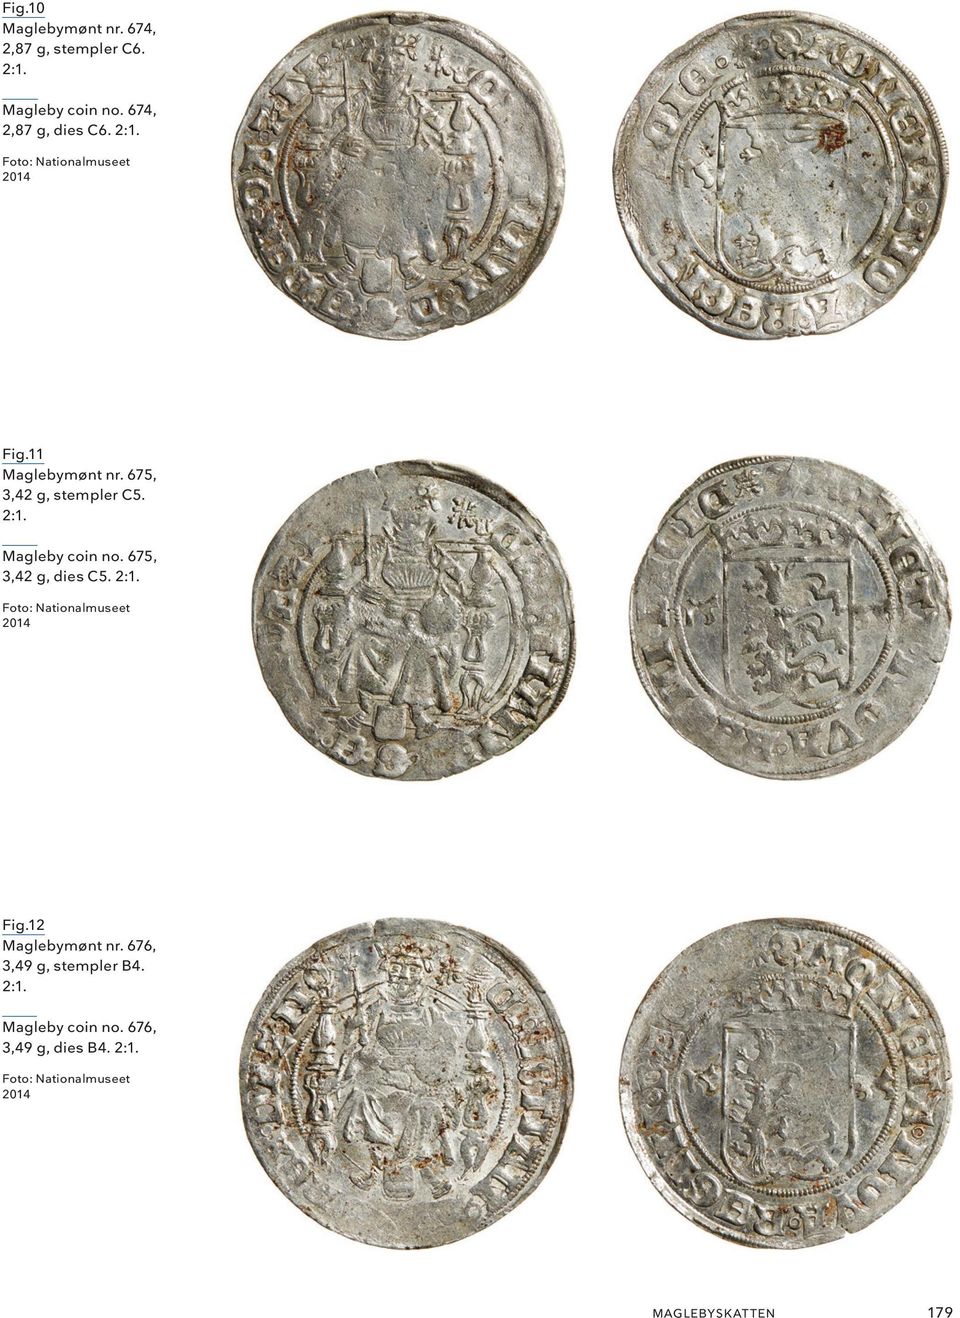 12 Maglebymønt nr. 676, 3,49 g, stempler B4. 2:1. Magleby coin no. 676, 3,49 g, dies B4. 2:1. Foto: Nationalmuseet 2014 MAGLEBYSK AT TEN 179